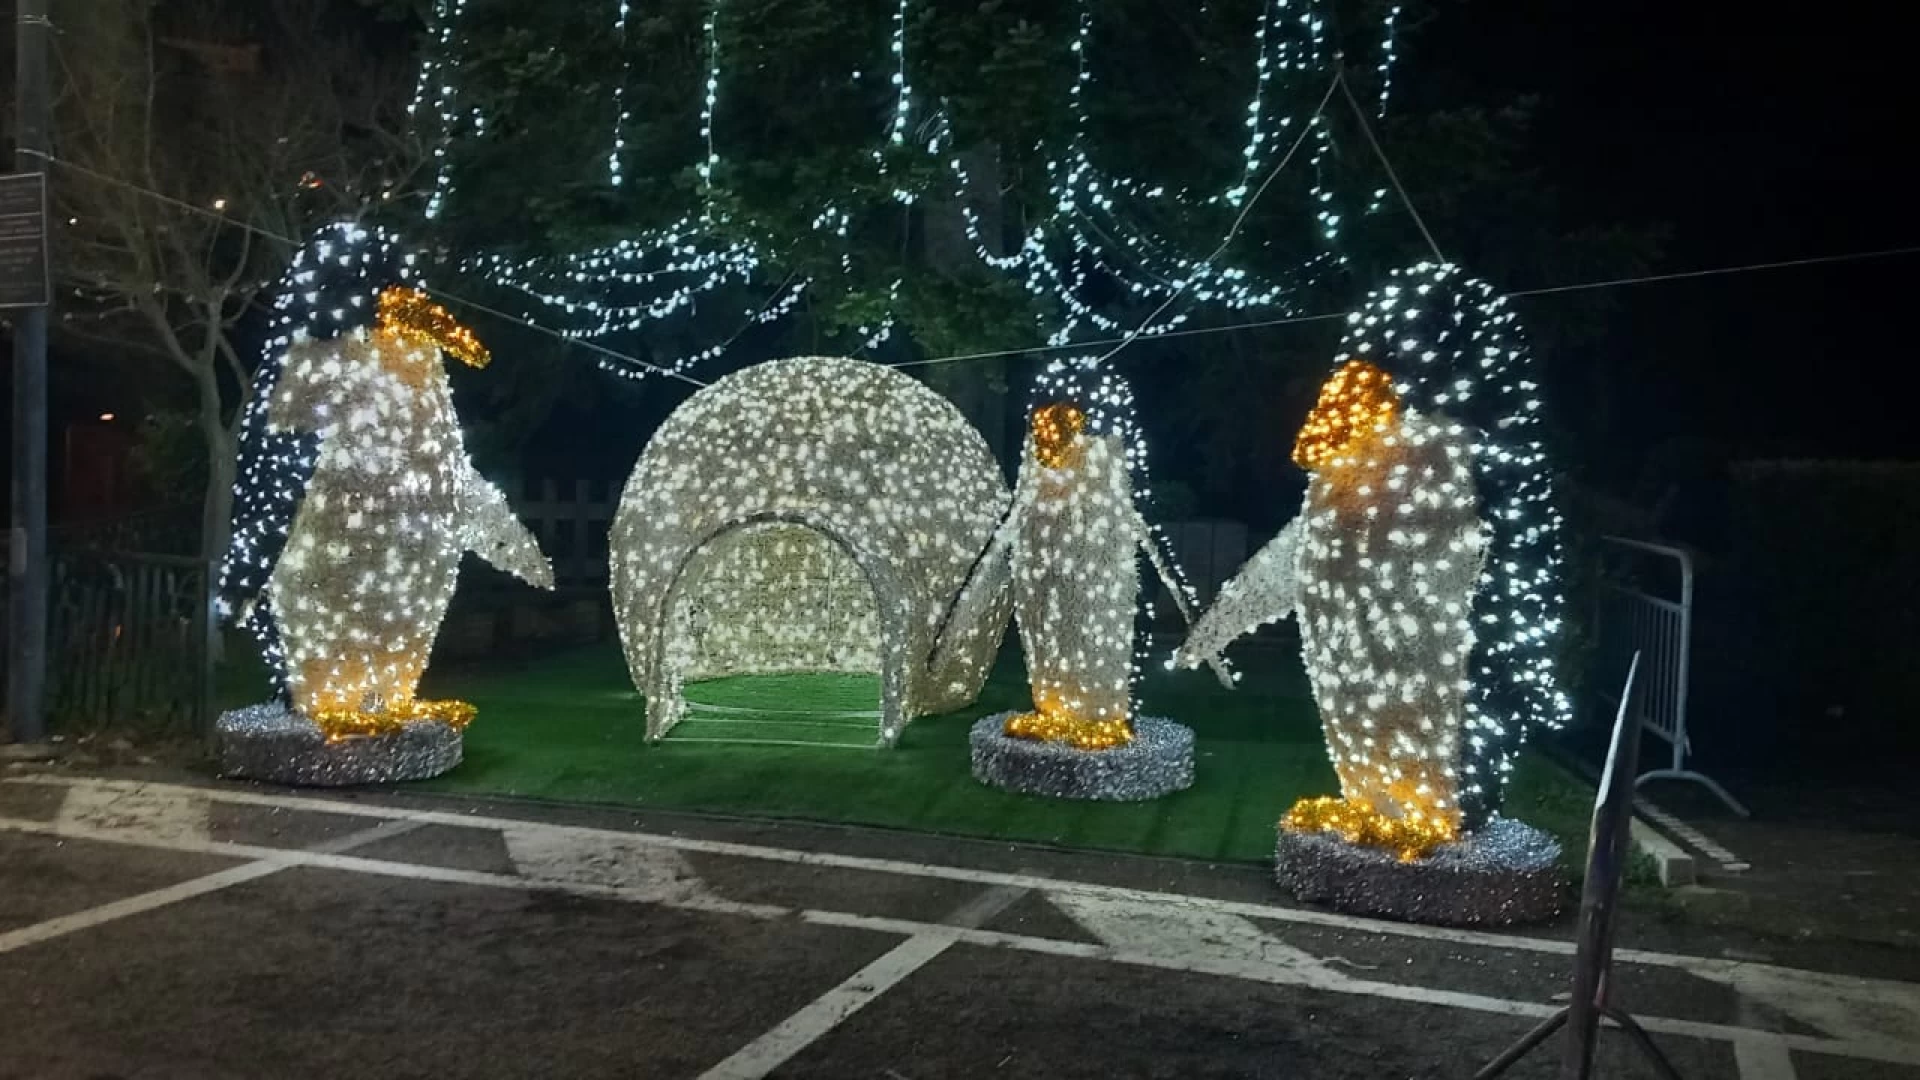 Colli a Volturno: si accende il paese delle luci….natalizie. Uno spettacolo affascinante a partire dalla serata odierna.